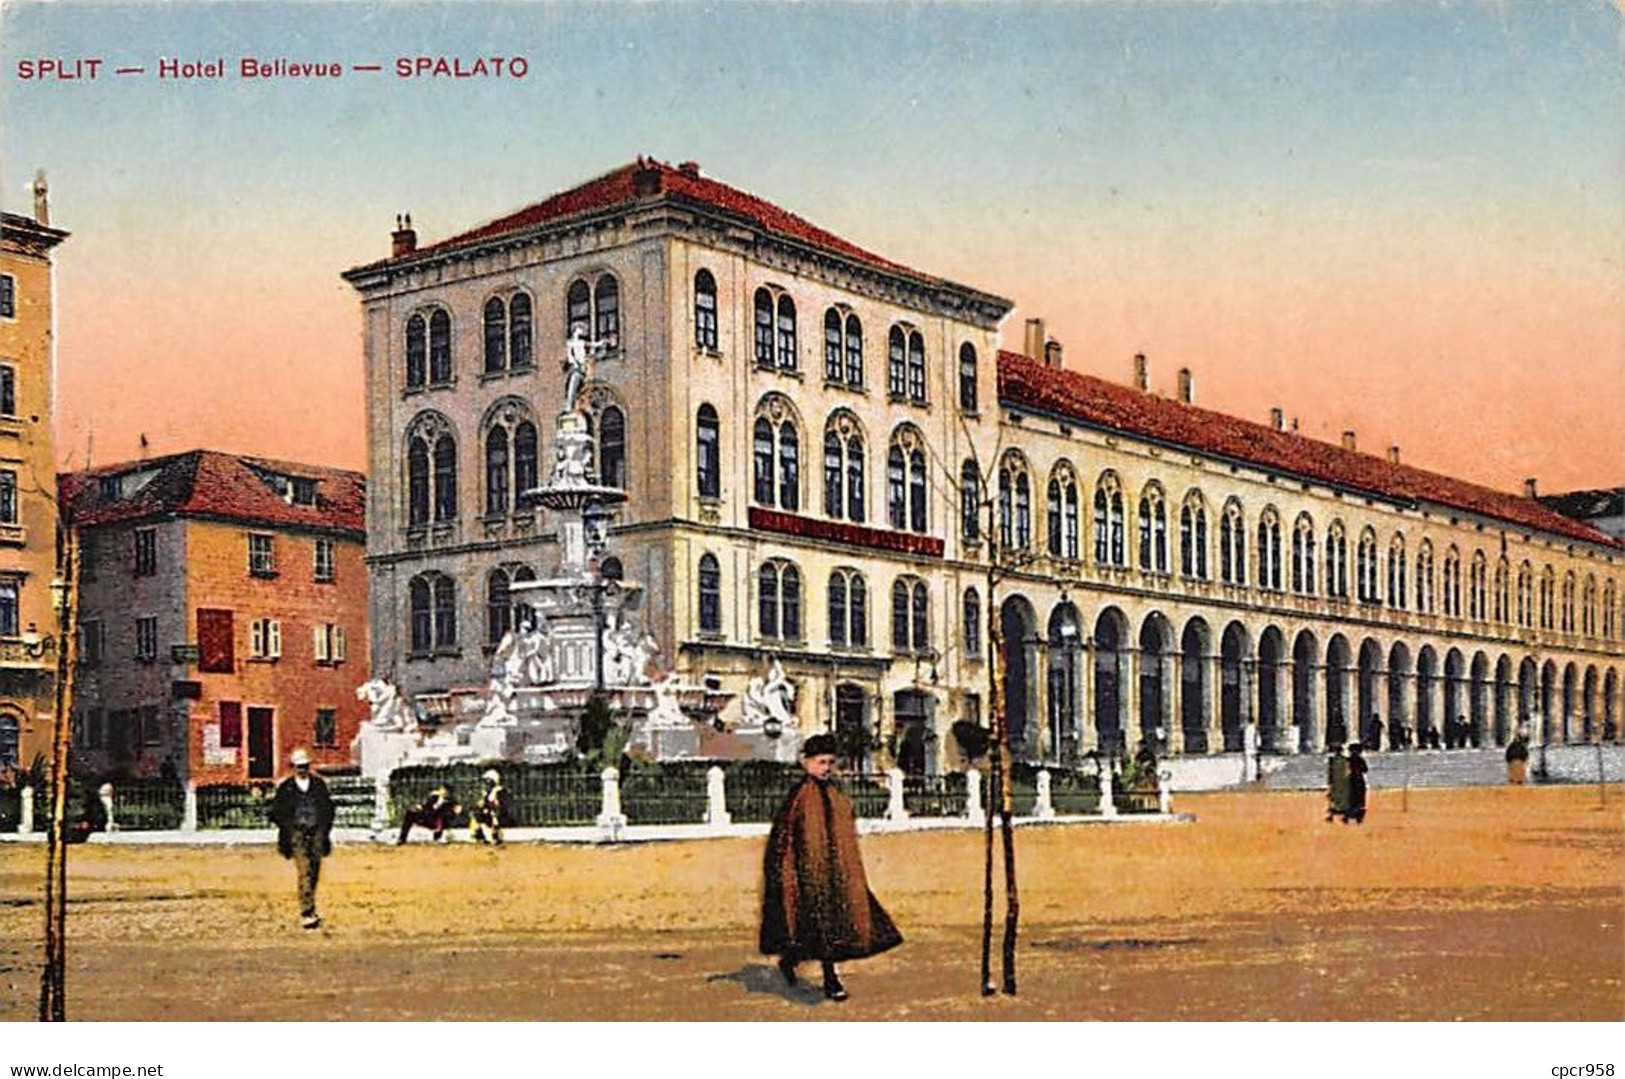 Croatie - N°71290 - SPLIT - Hotel Bellevue - SPALATO - Kroatien